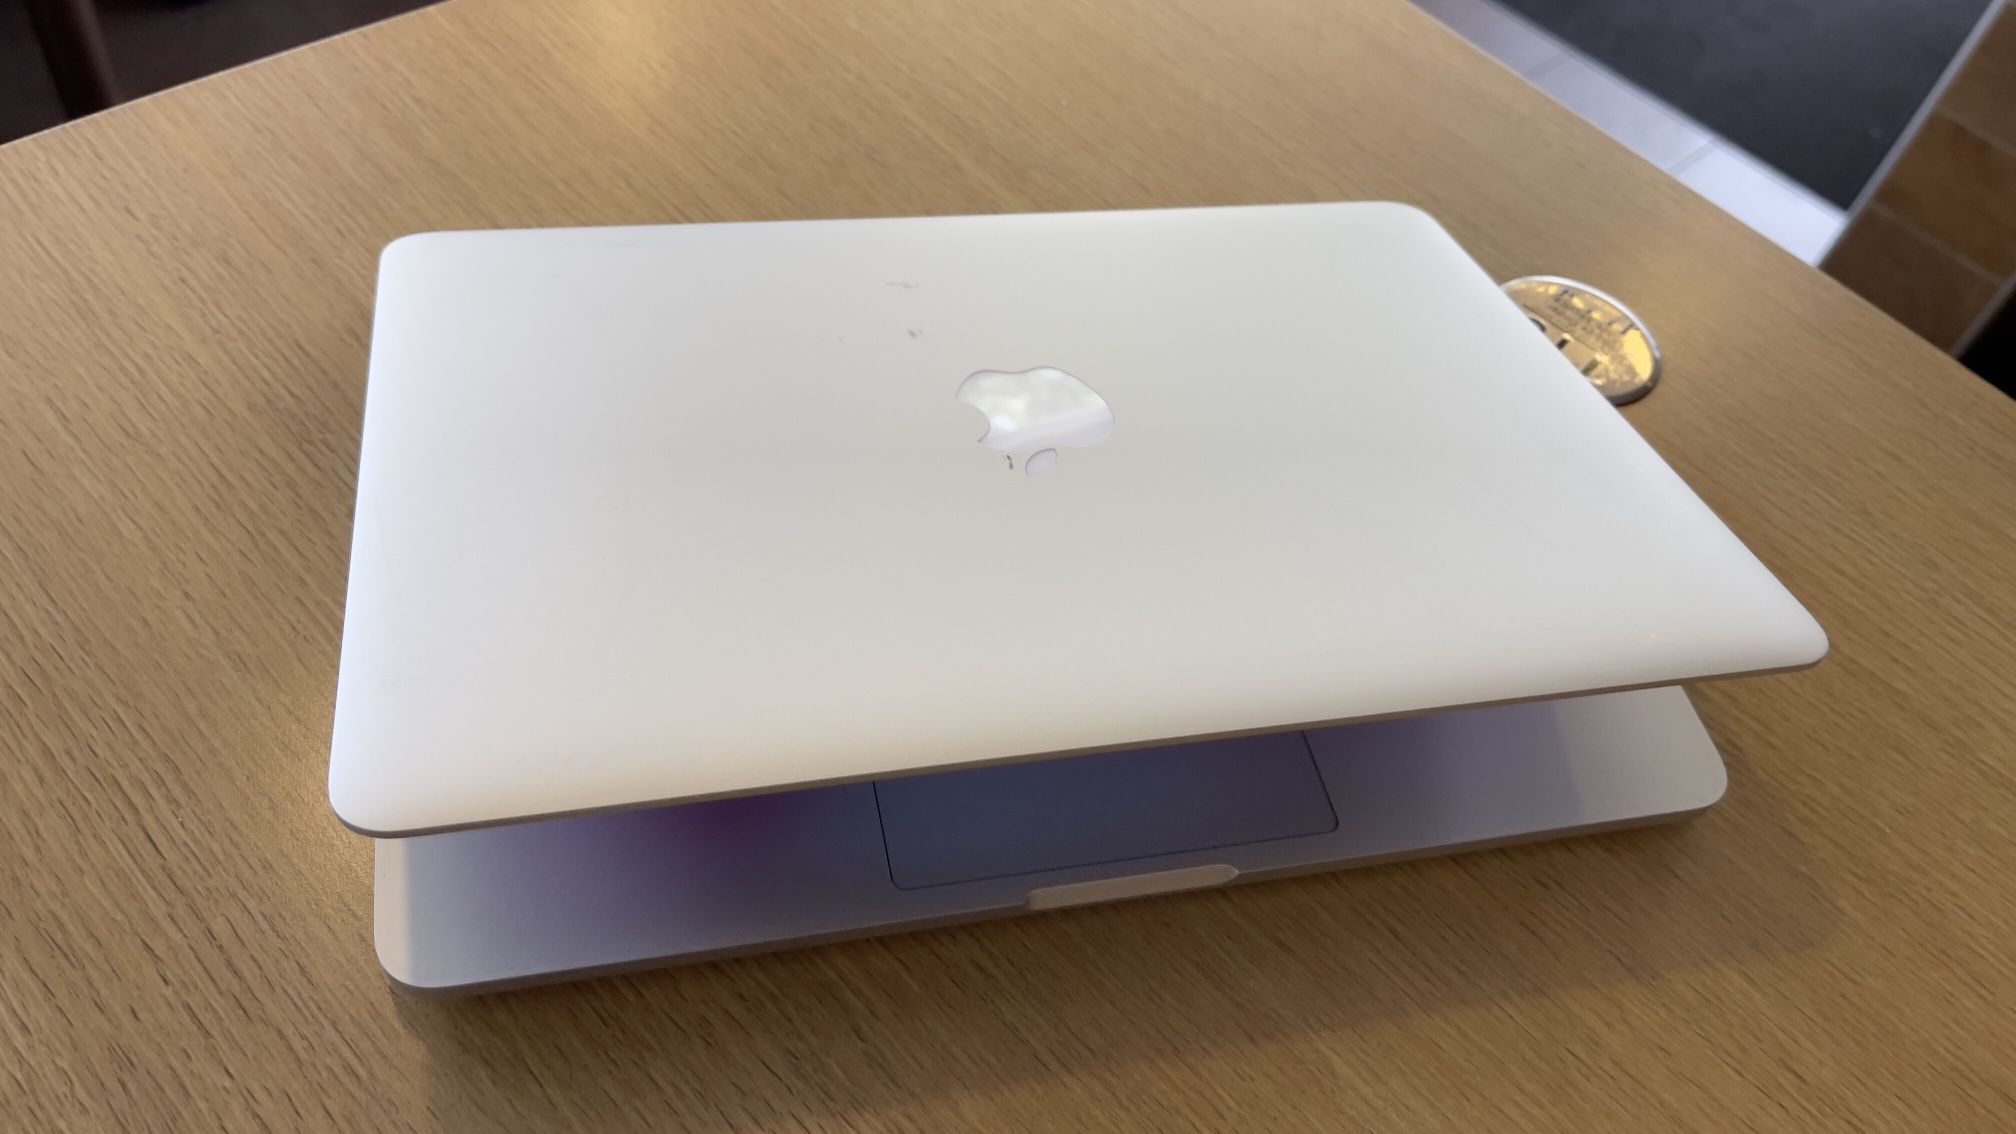 Apple MacBook Pro 2017 Retina 13” Core I5, 8GB DDR3 Ram 256GB SSD $220